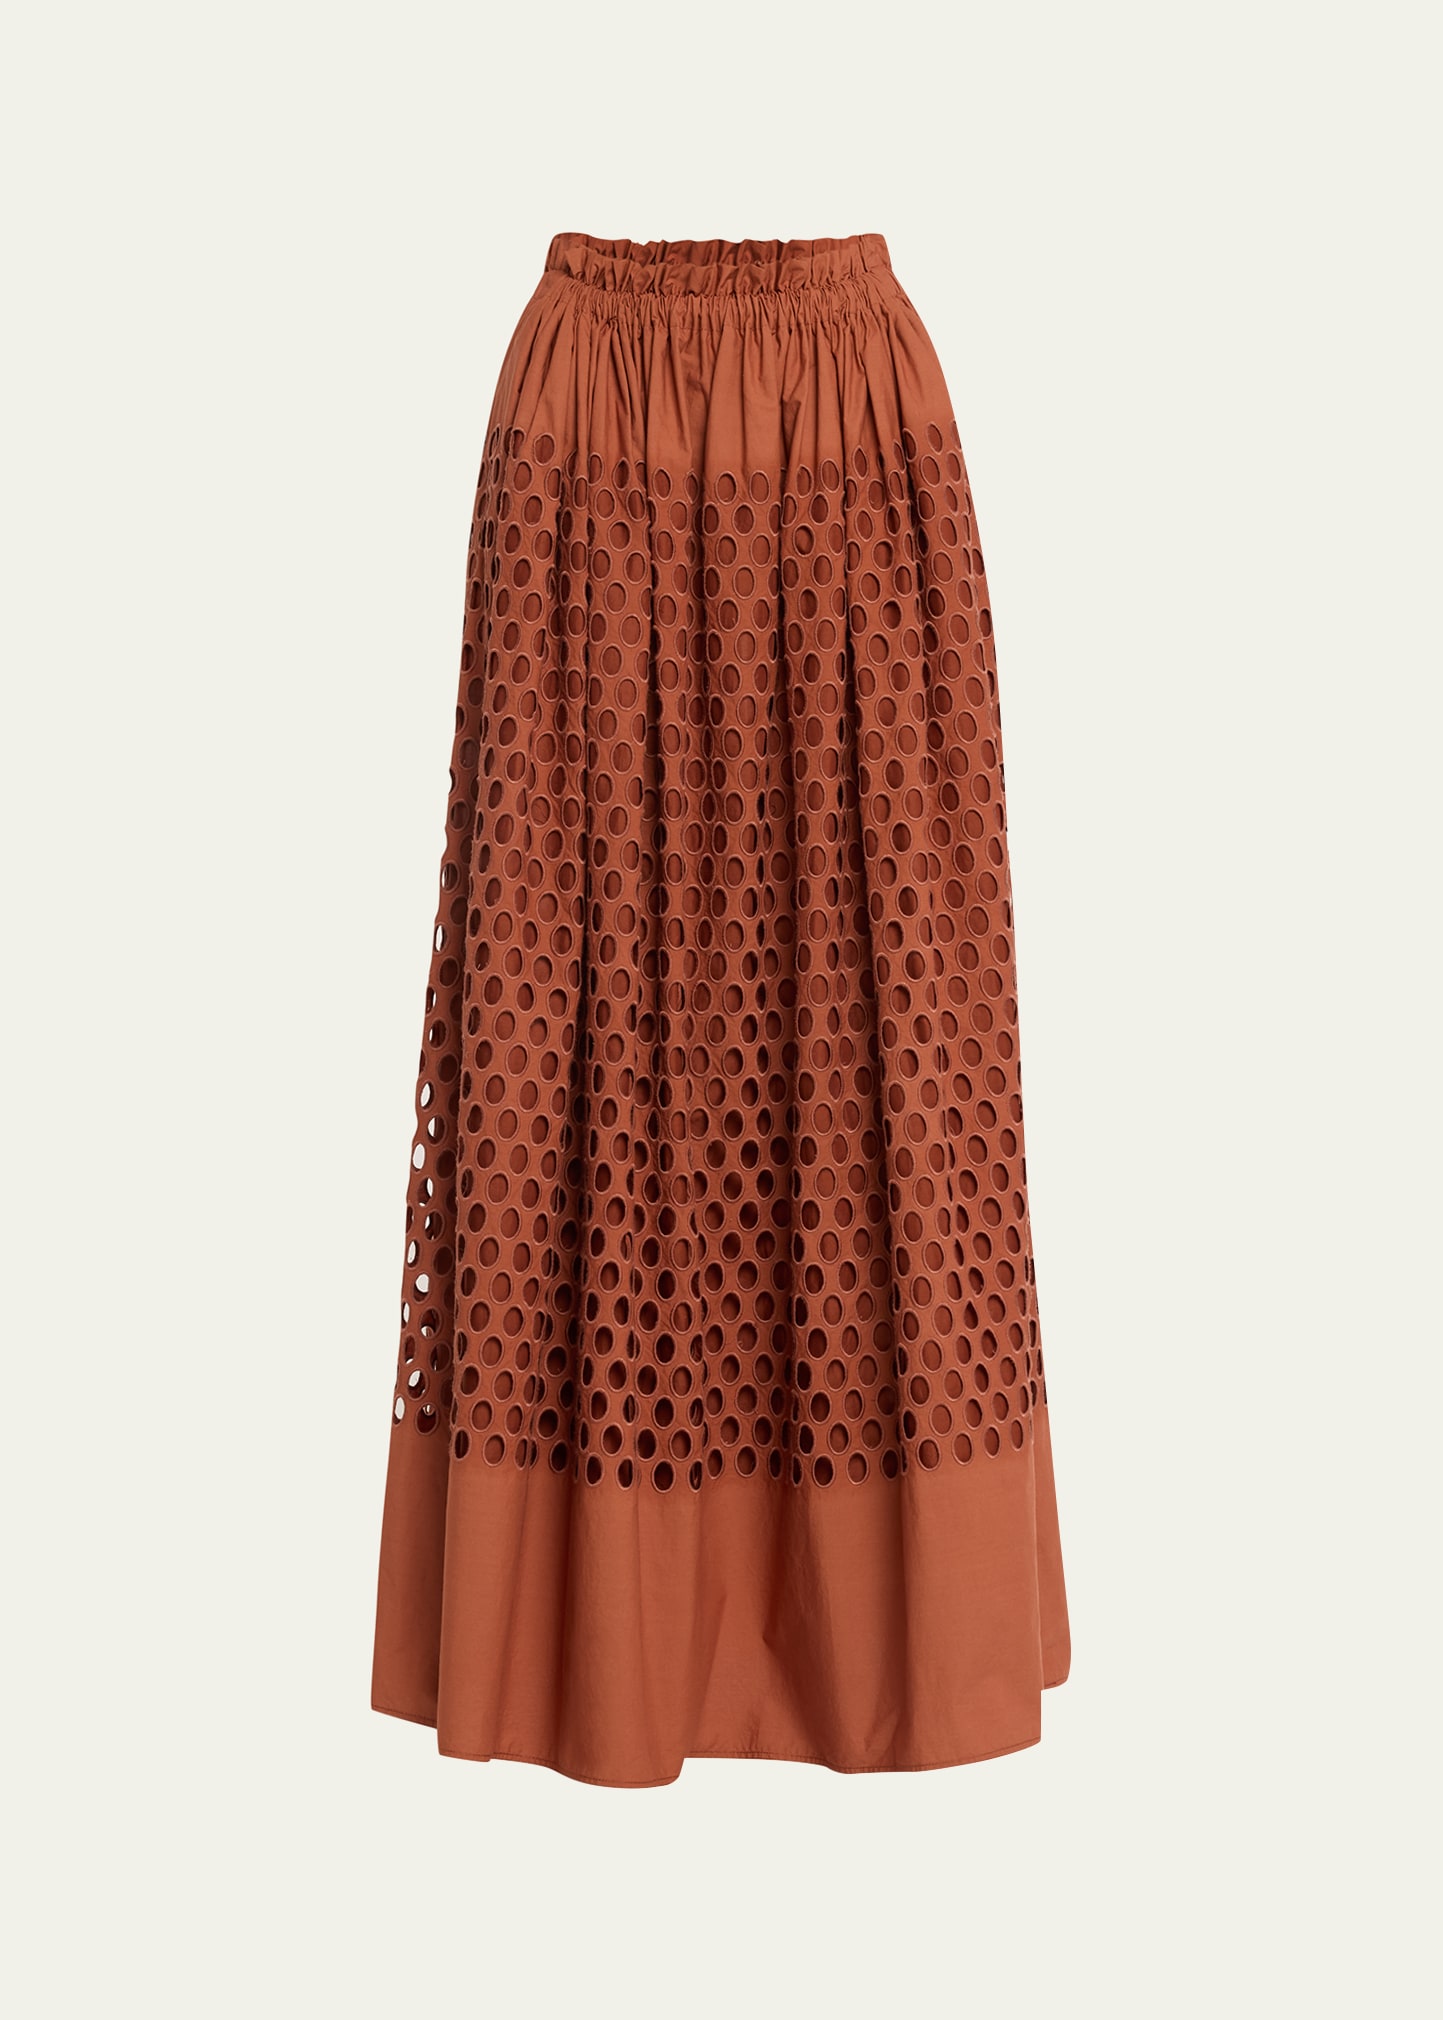 A.L.C. Flora Skirt | Bergdorf Goodman